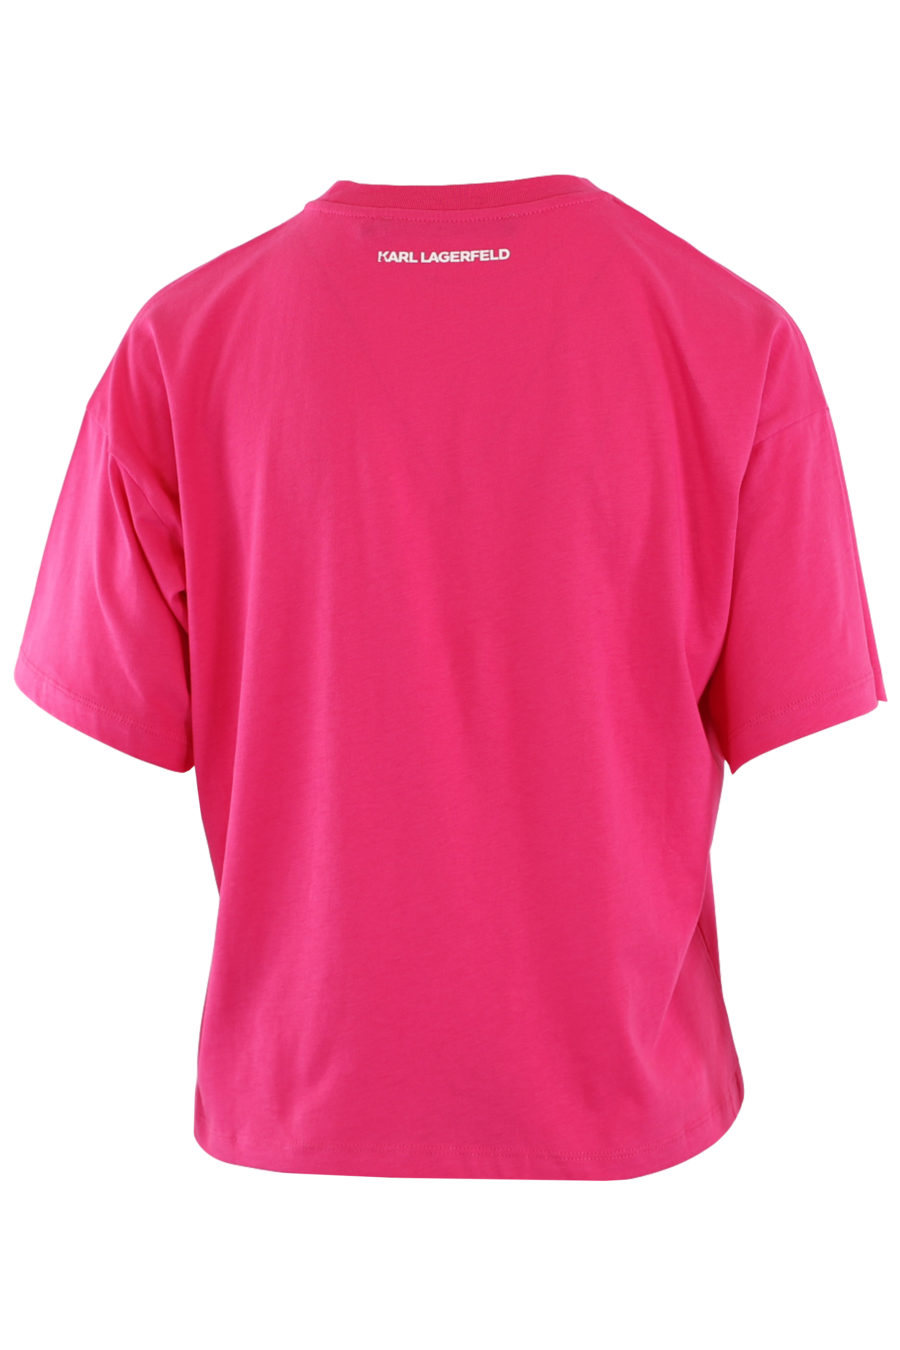 T-shirt fuchsia avec logo en velours - IMG 8945